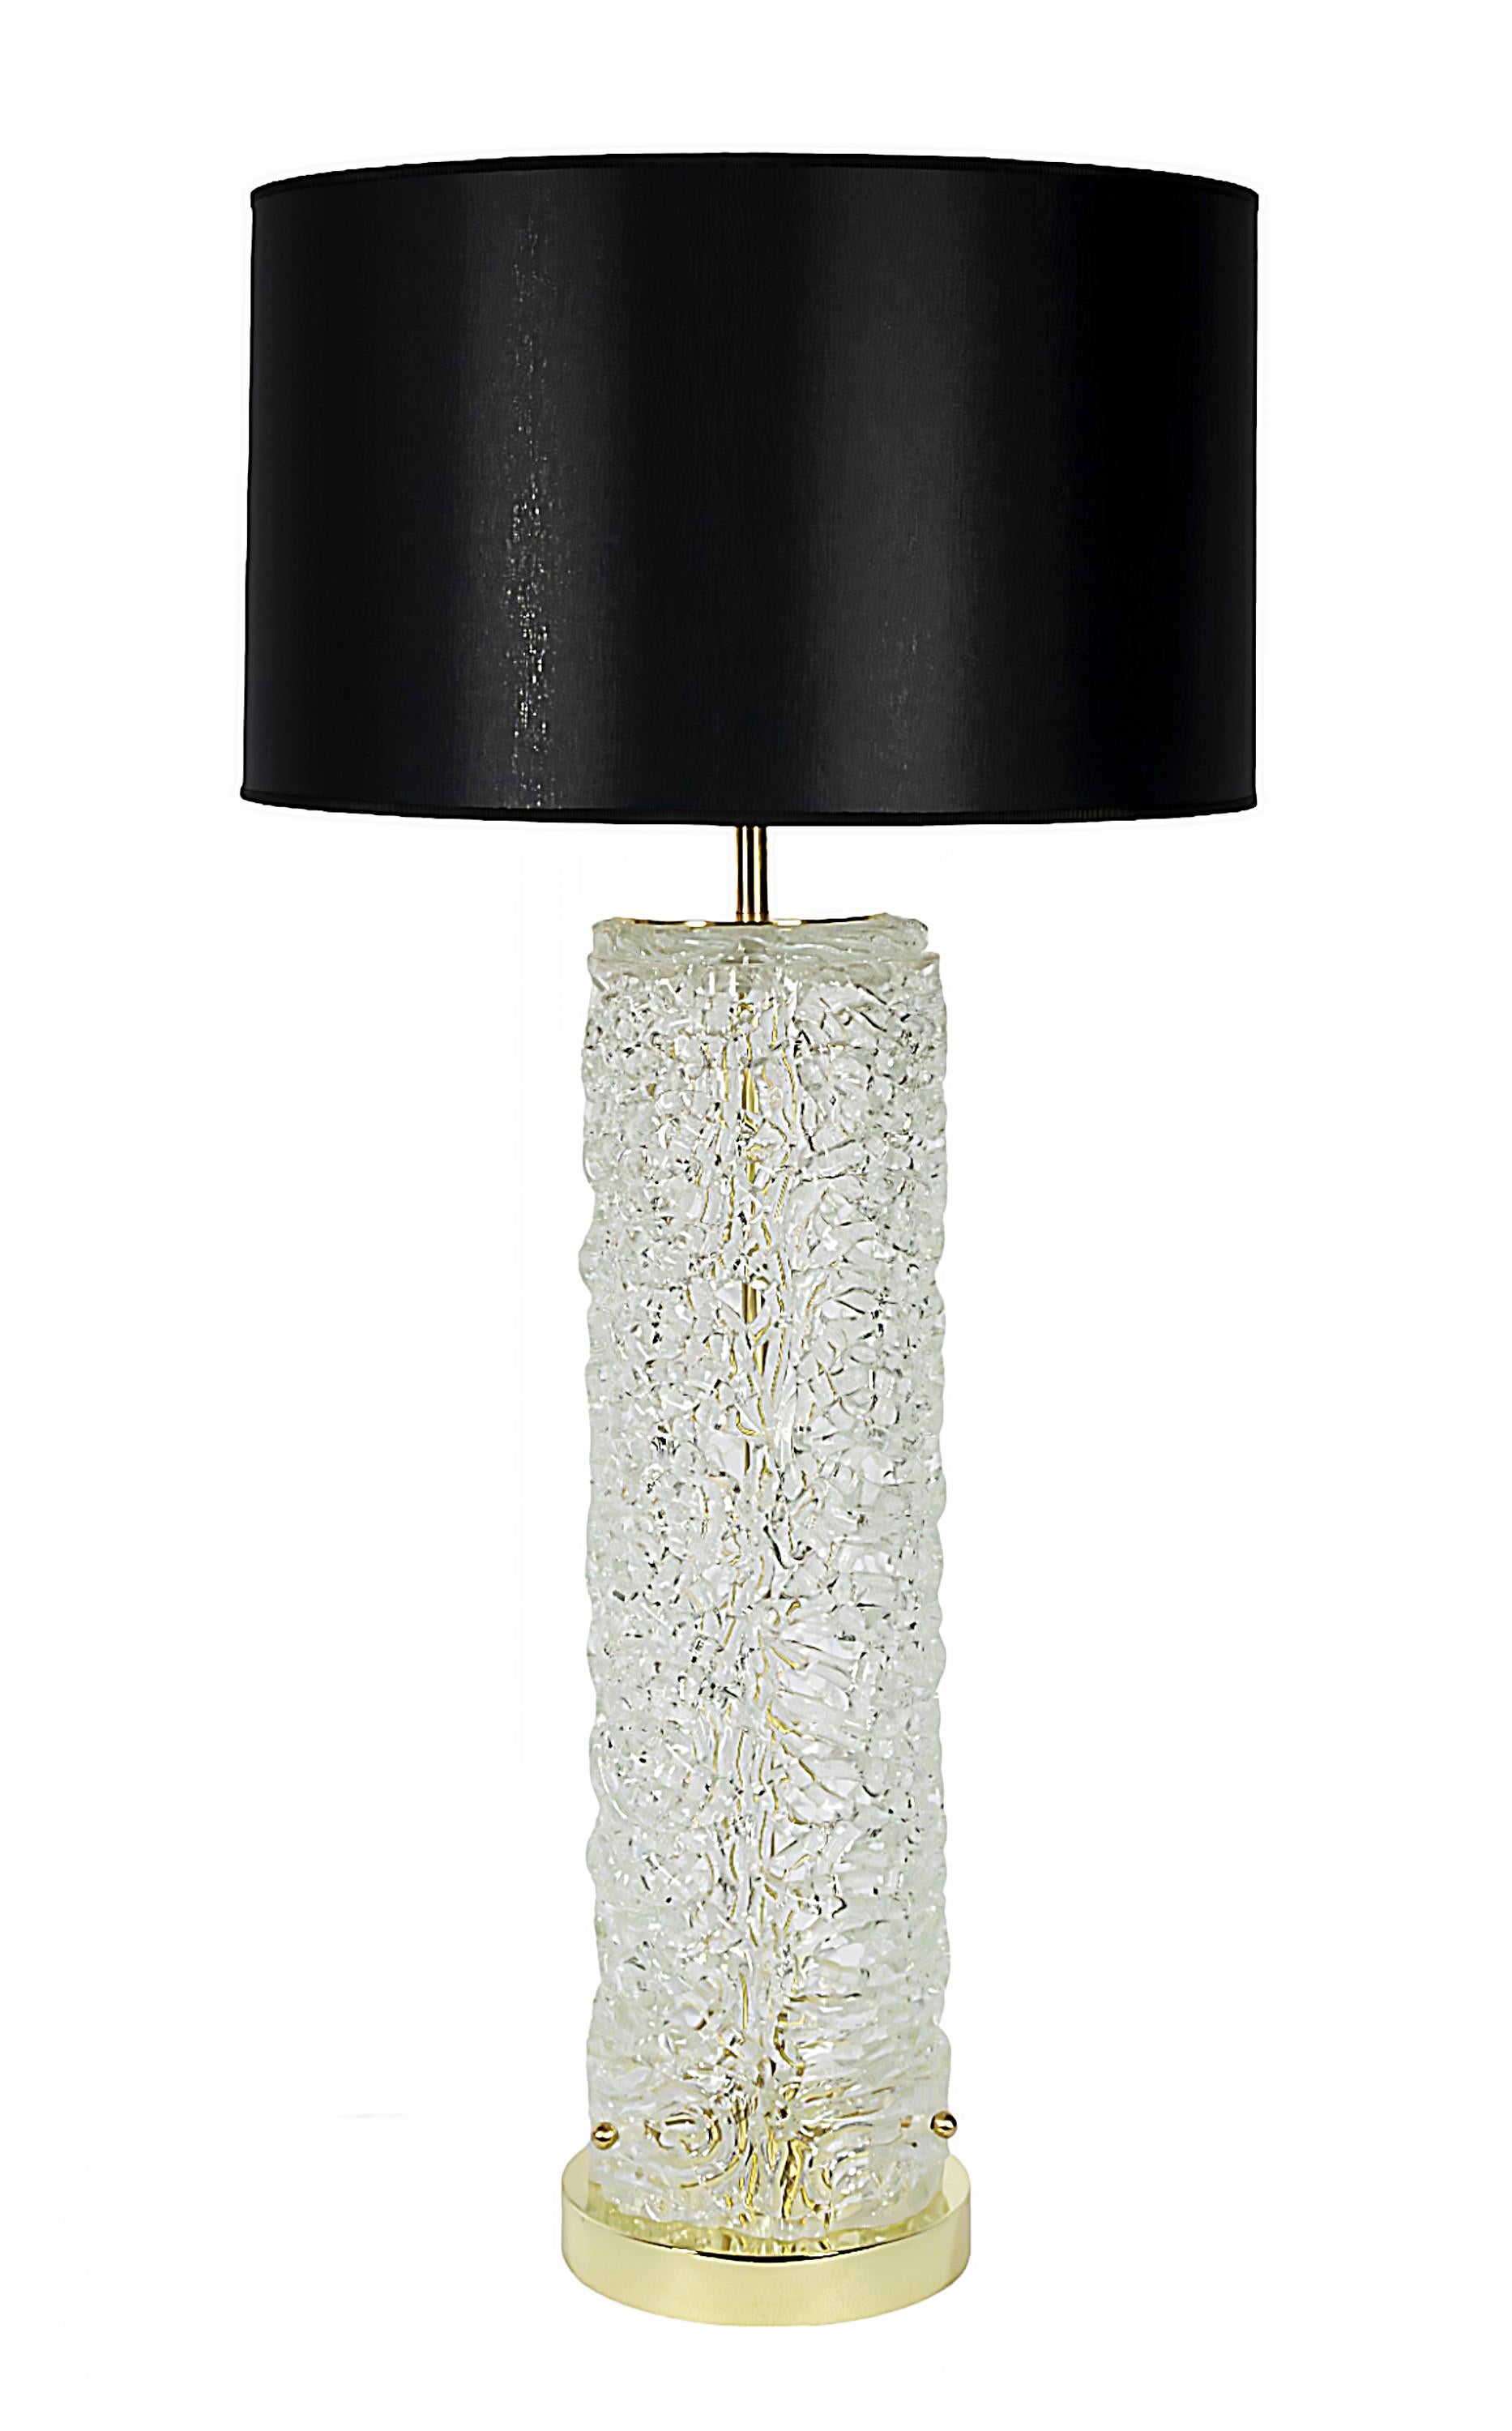 Ein Paar italienische Tischlampen aus transparentem, strukturiertem und durchbrochenem Murano-Glas.
Der Sockel ist aus rundem Messing. 
Beide Lampen sind mit neu gefertigten schwarzen Satin-Stoffschirmen ausgestattet.
Abmessungen: 
Höhe 91 cm (inkl.